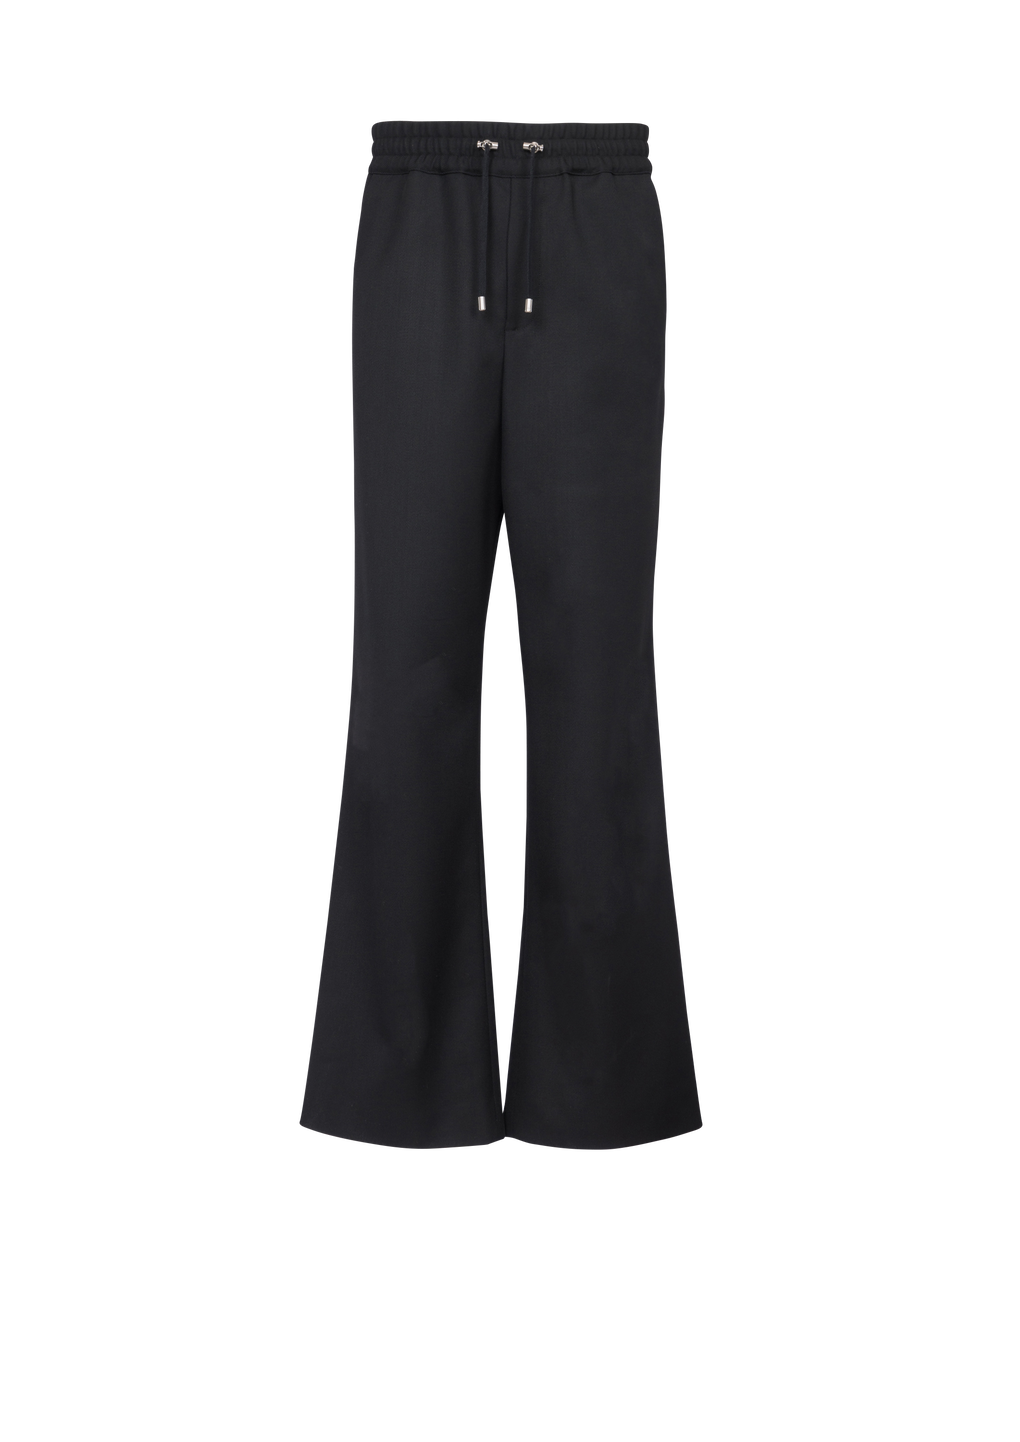 Pantaloni stile pigiama in lana, nero, hi-res